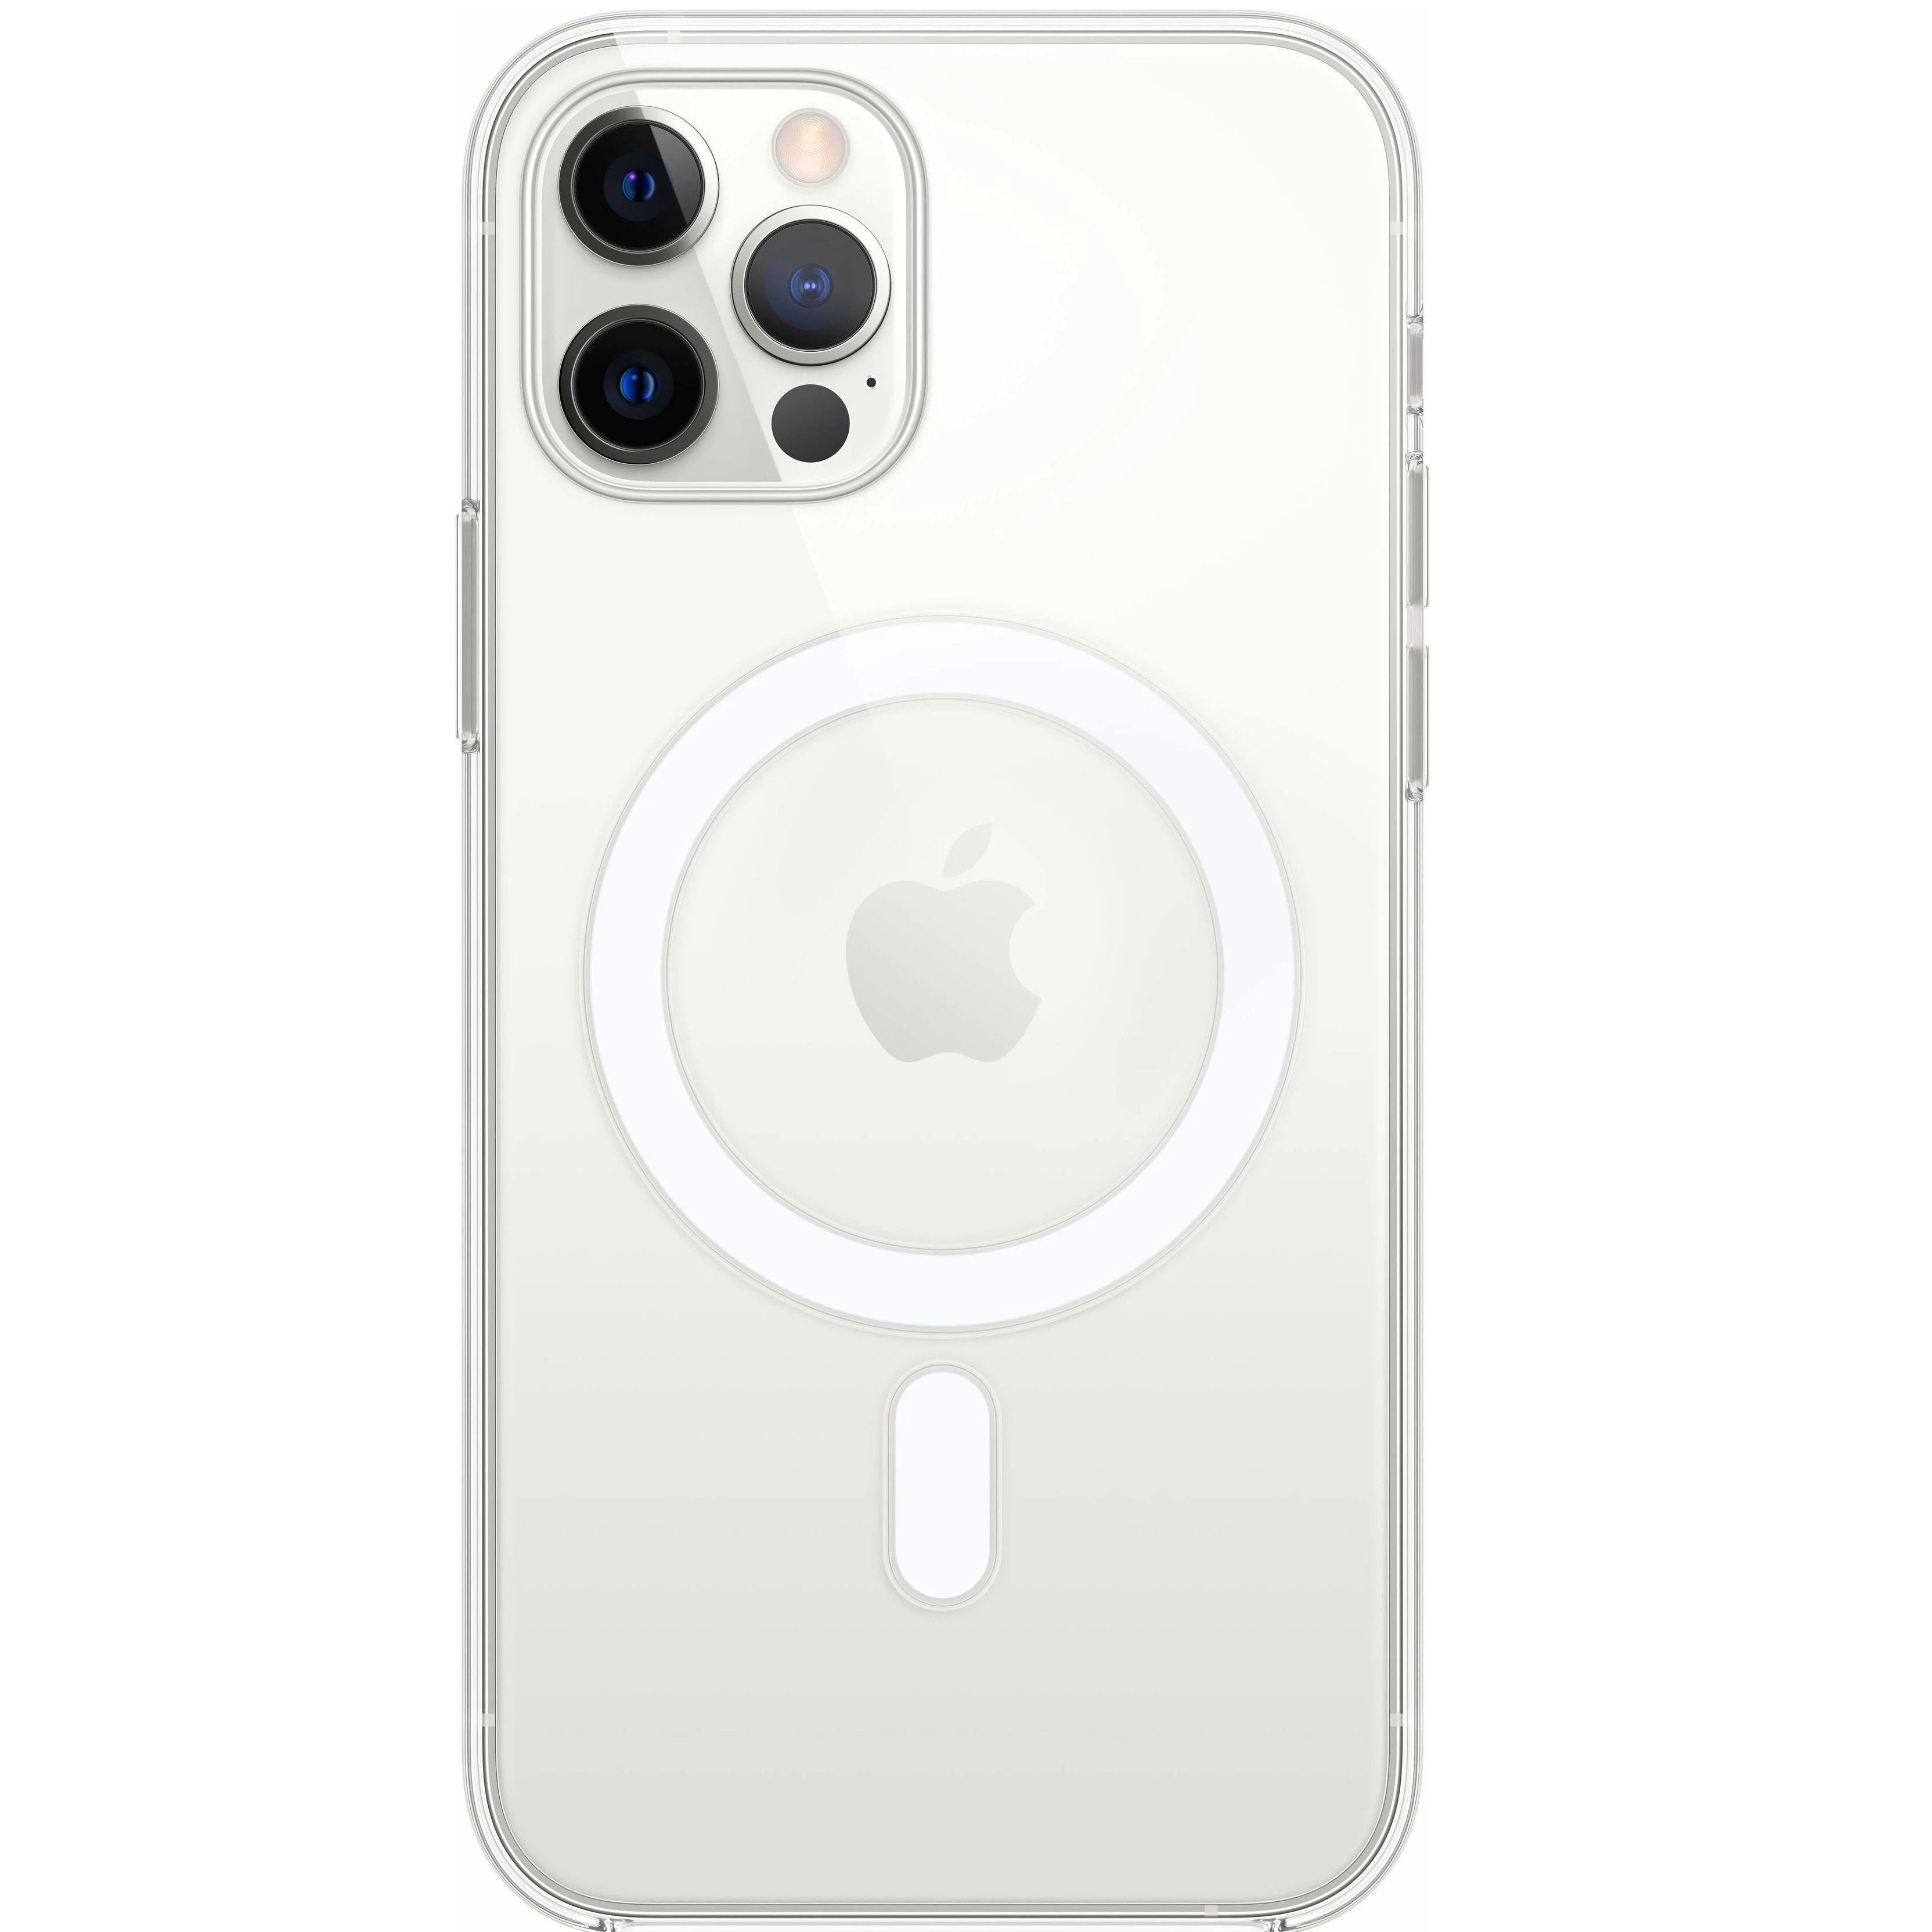 Подходит ли чехол 11 айфона на 12. Iphone 11 64gb White. Iphone 11 Pro 64gb. Apple iphone 11 Pro Max. Apple iphone 11 Pro 64gb Silver.